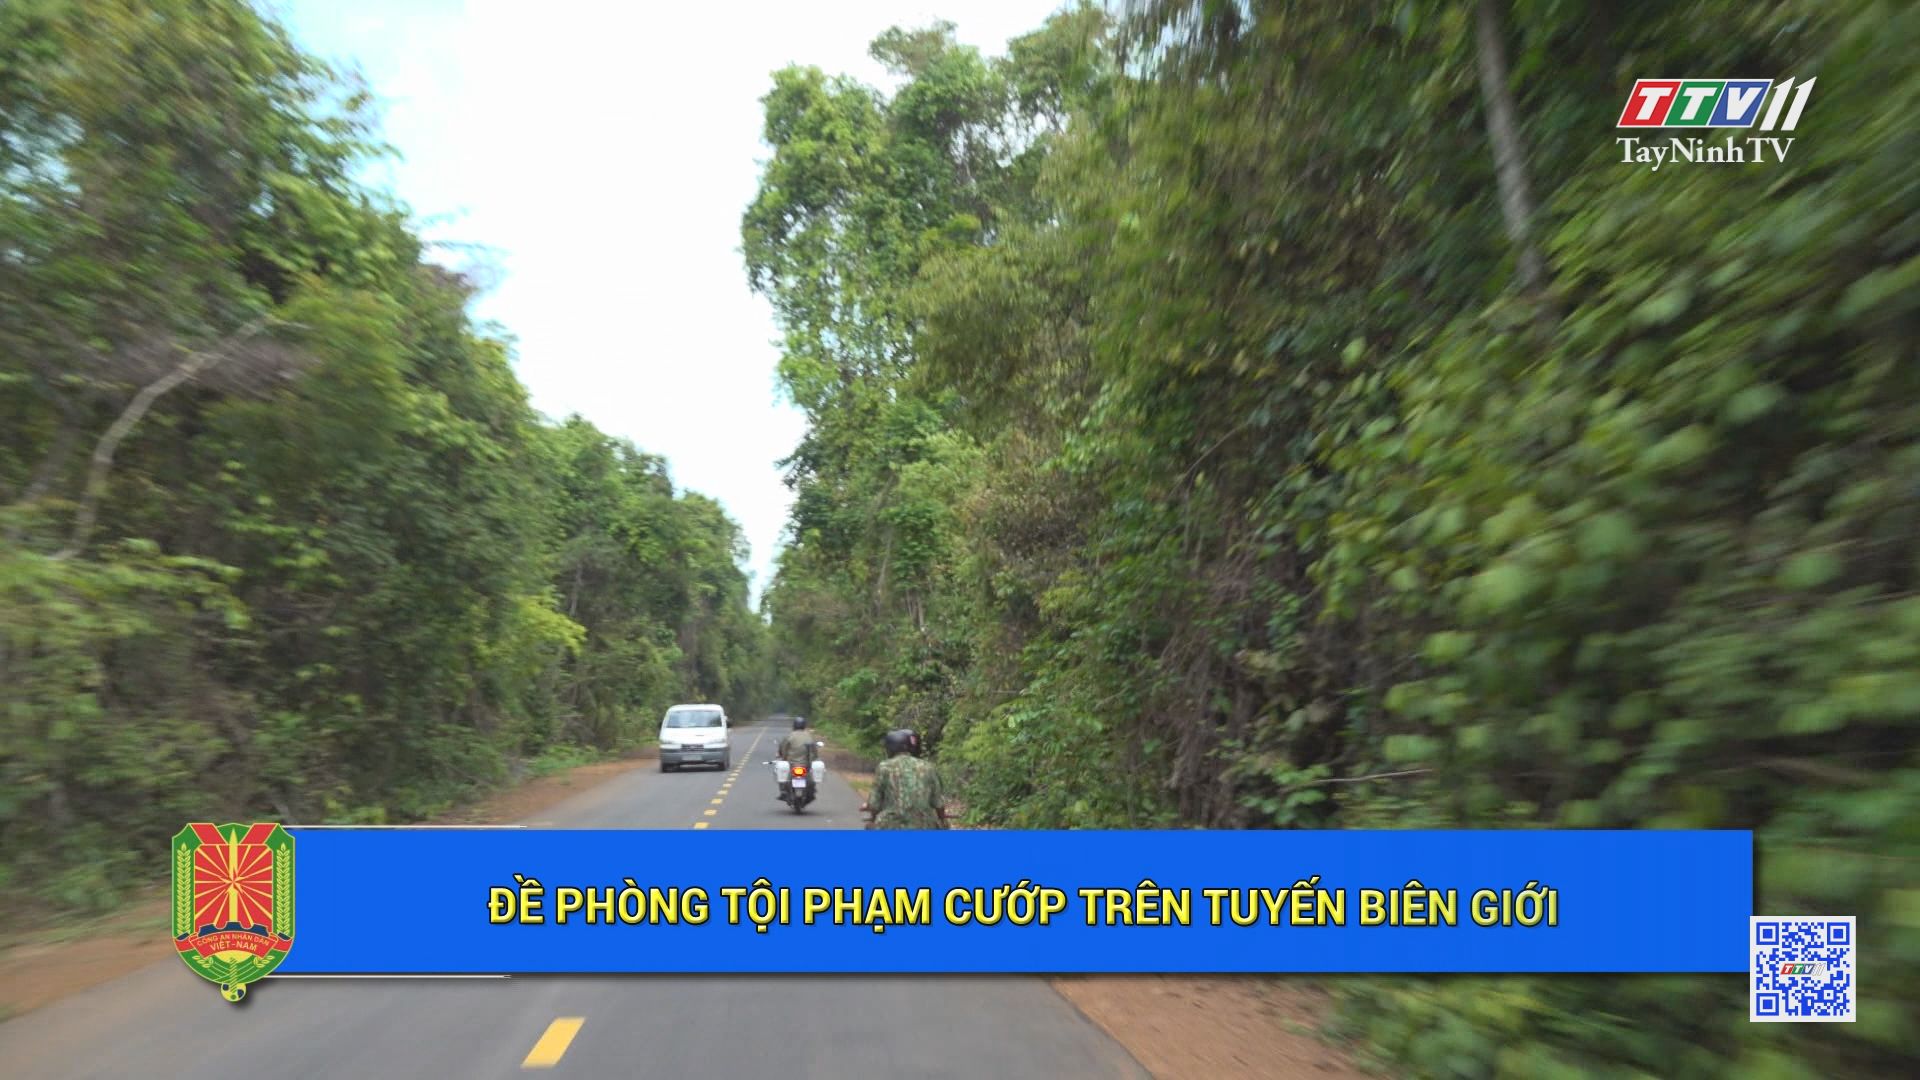 Đề phòng tội phạm cướp trên tuyến biên giới | An ninh Tây Ninh | TayNinhTV